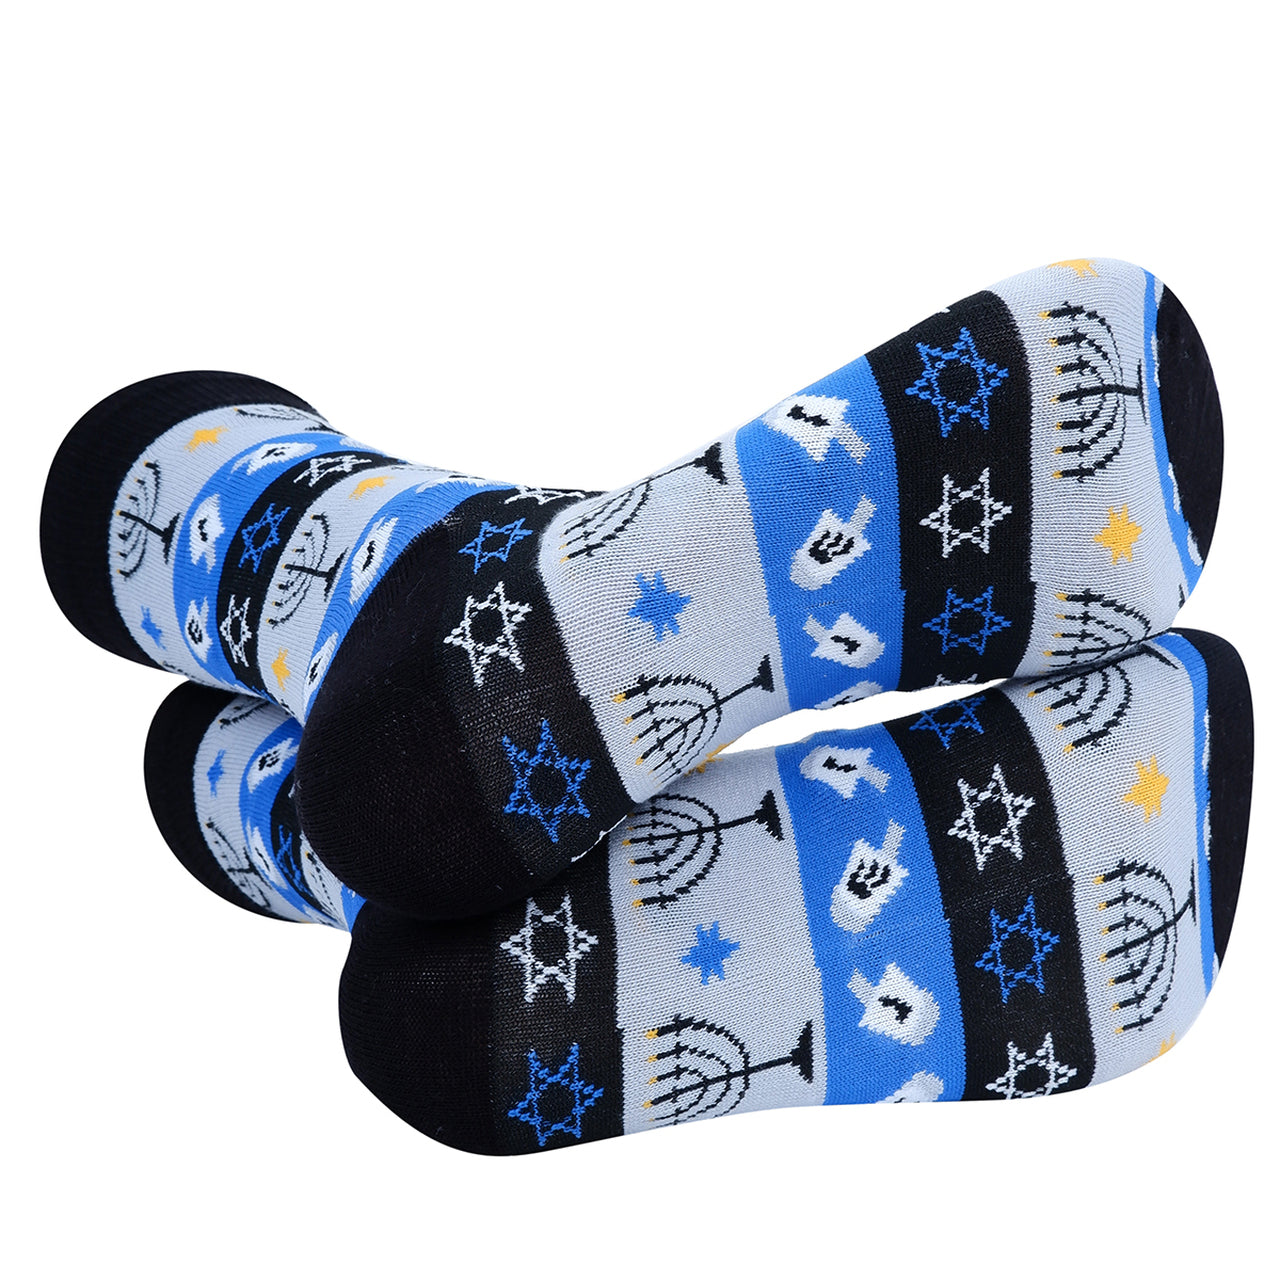 Men's Hanukkah Crew Sock - Black and Blue